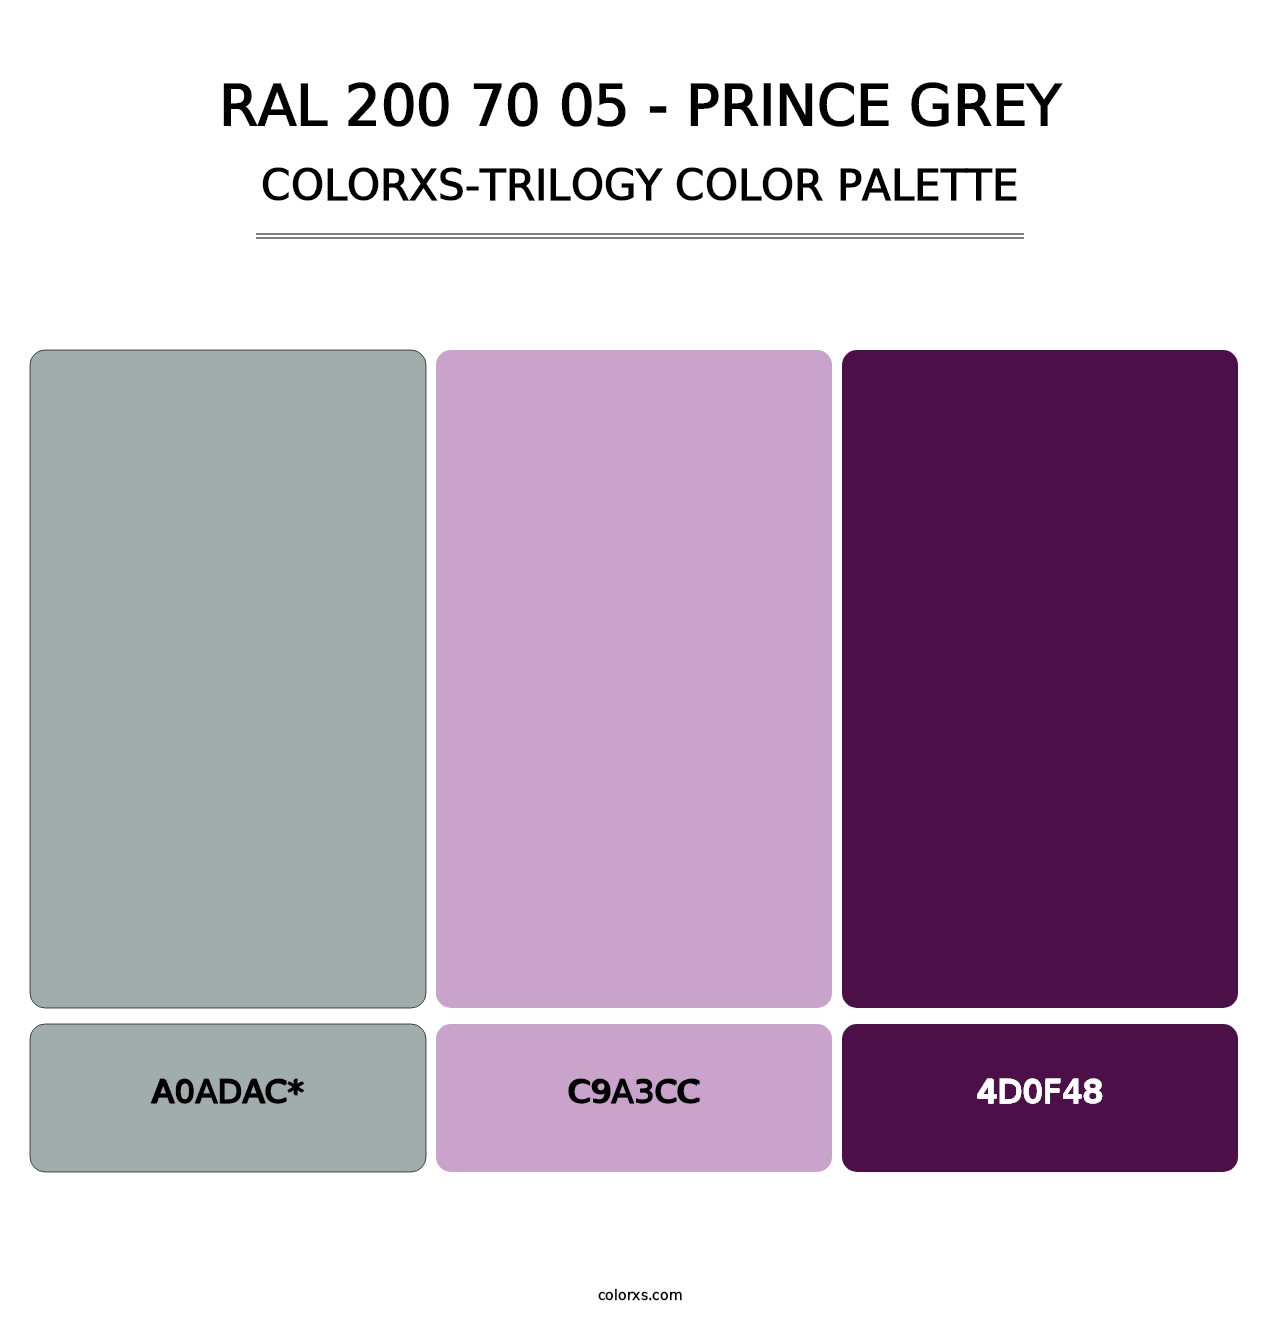 RAL 200 70 05 - Prince Grey - Colorxs Trilogy Palette